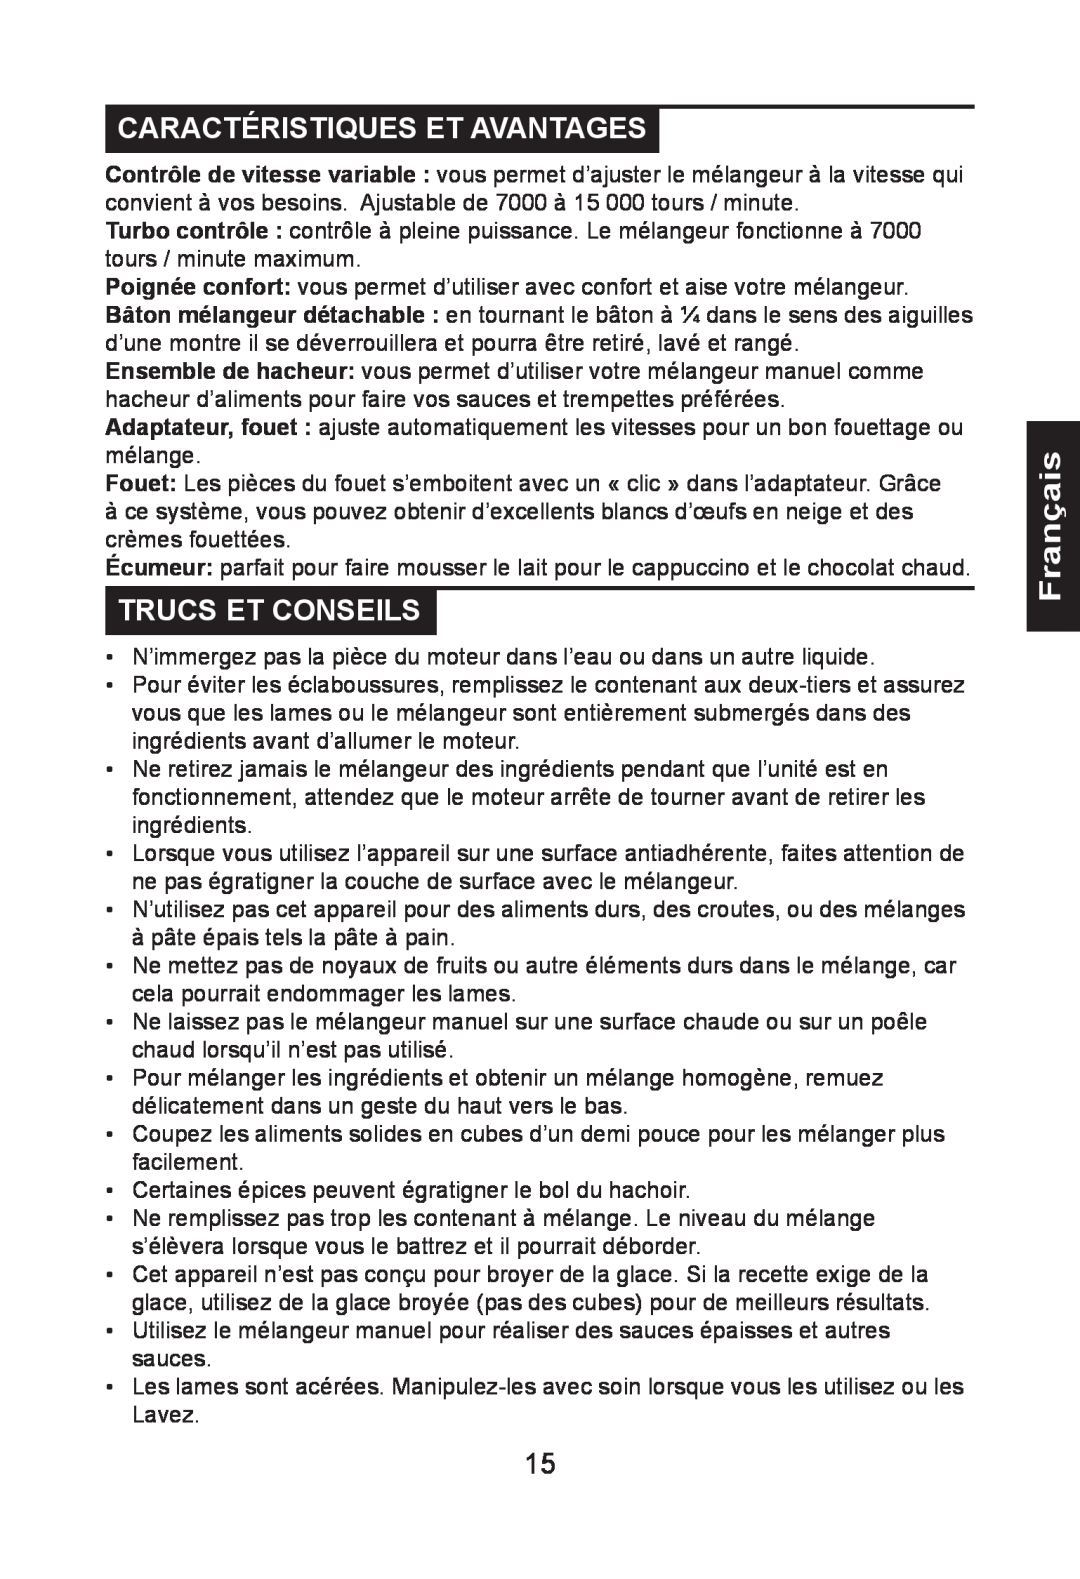 Nesco HB-17PR manual Caractéristiques Et Avantages, Trucs Et Conseils, Français 